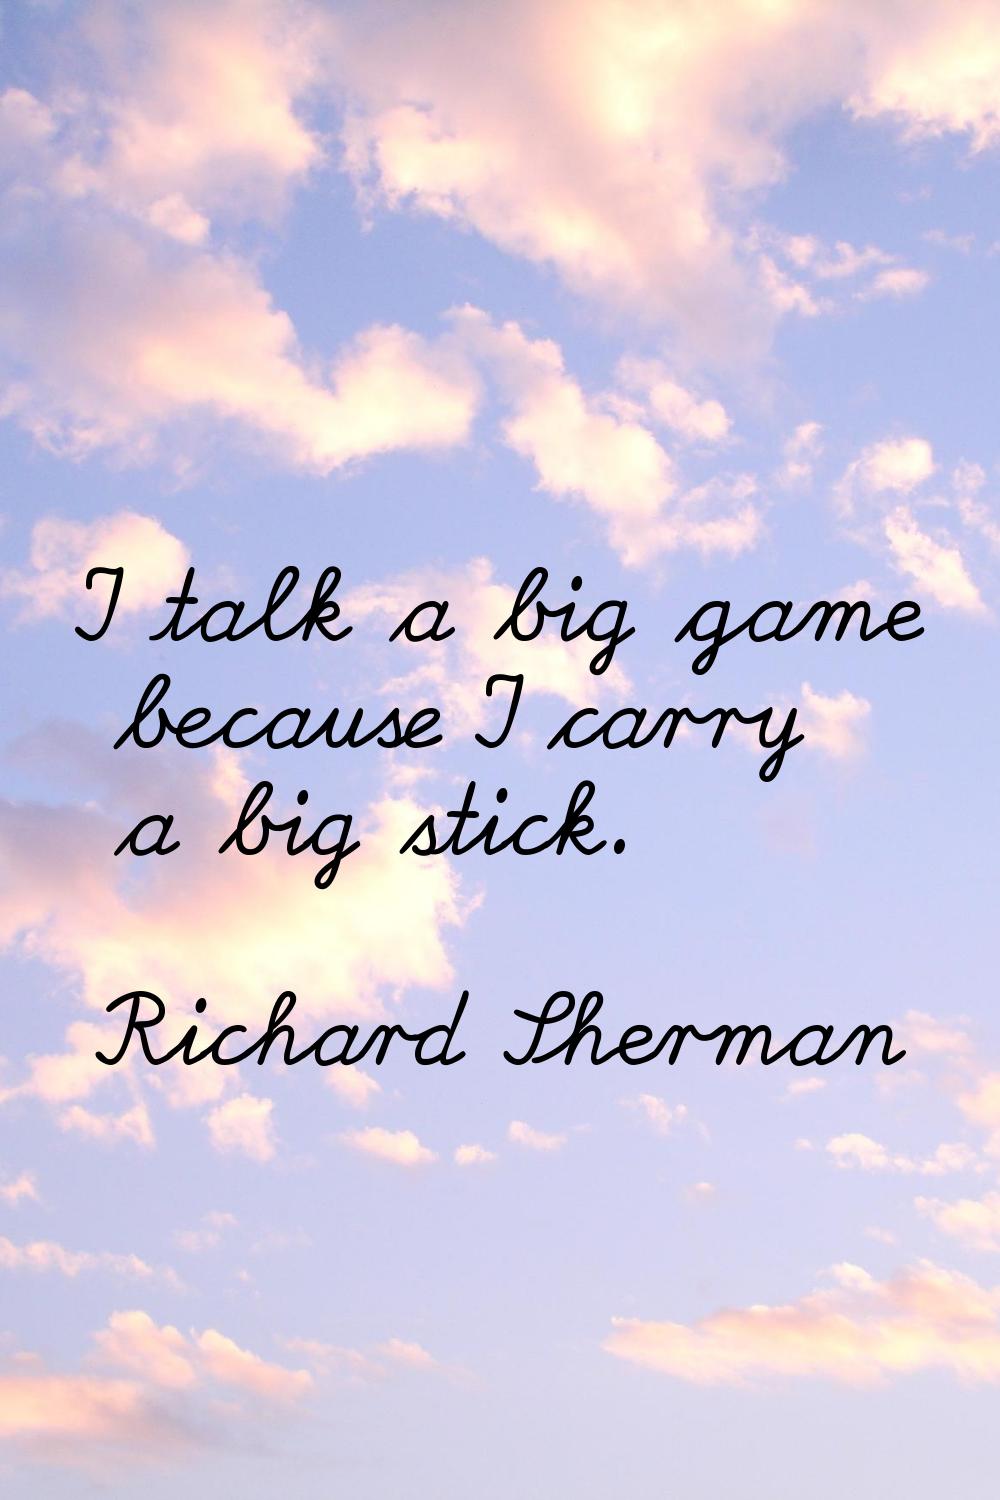 I talk a big game because I carry a big stick.